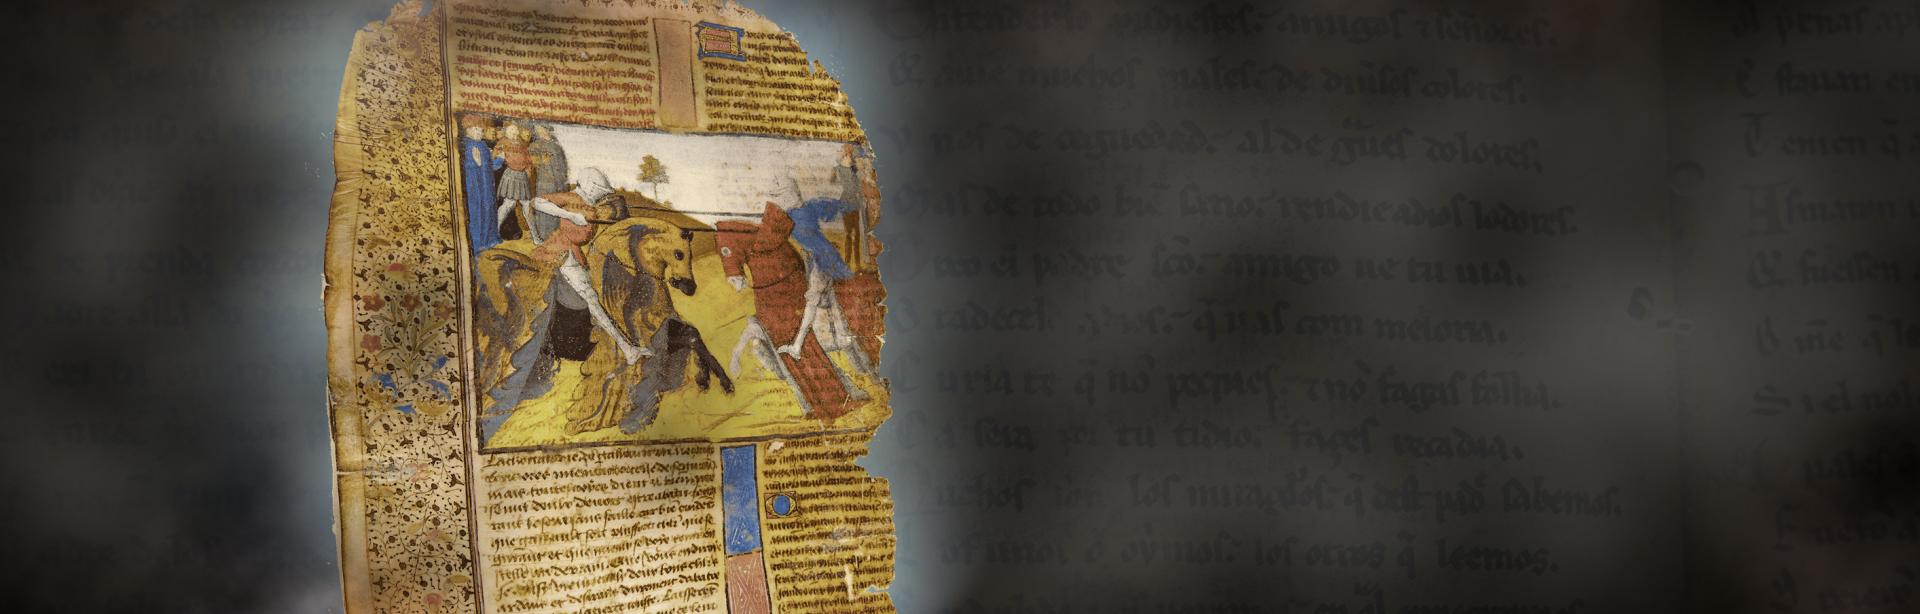 Les manuscrits perdus de l’Europe médiévale